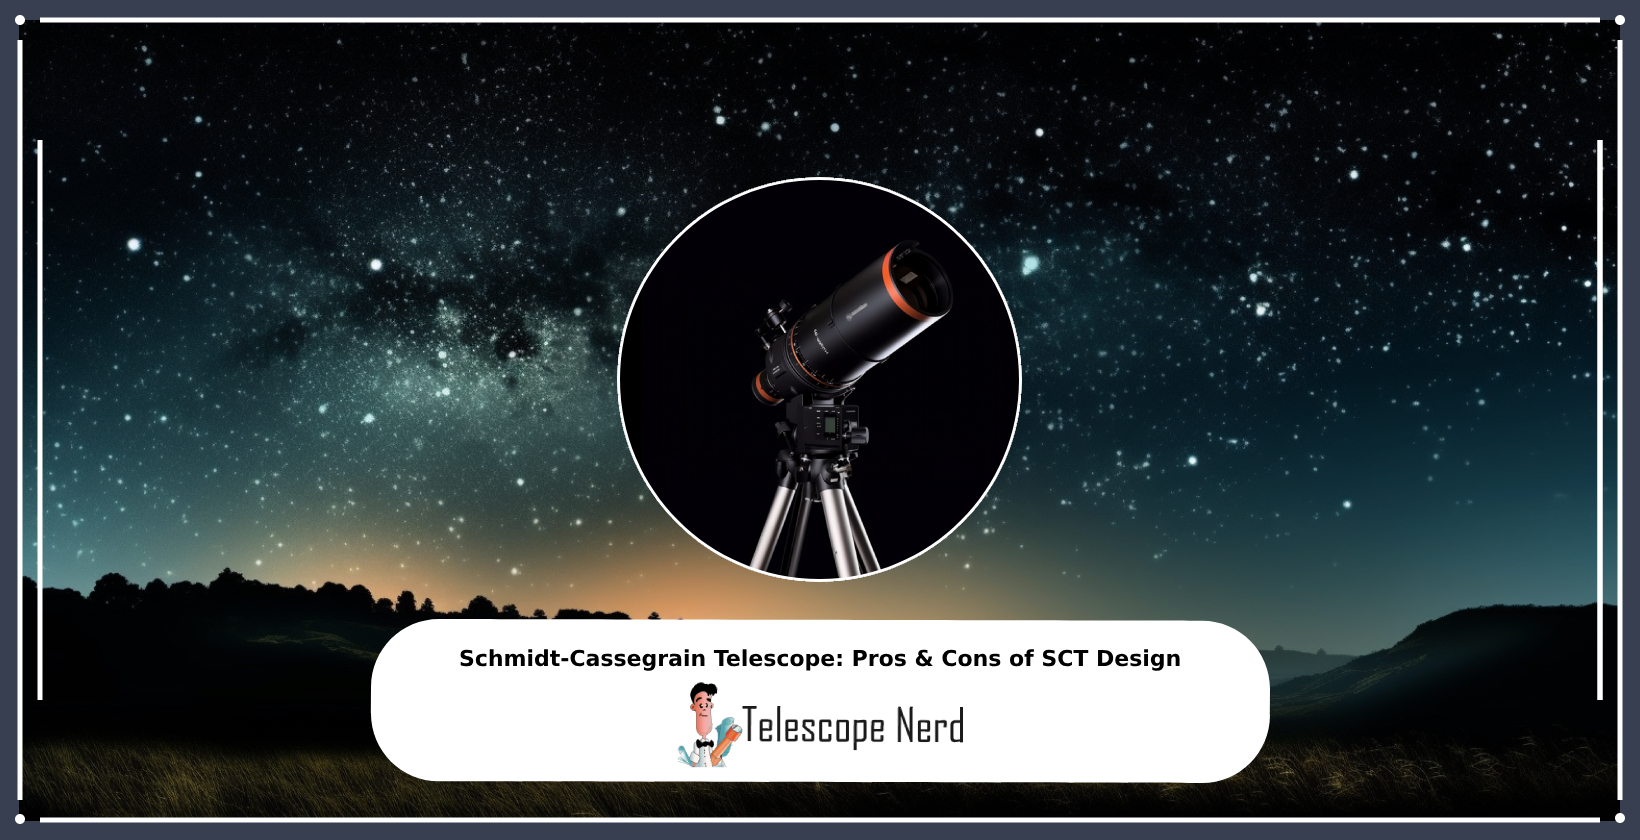 Schmidt-Cassegrain Telescope: Pros & Cons of SCT Design